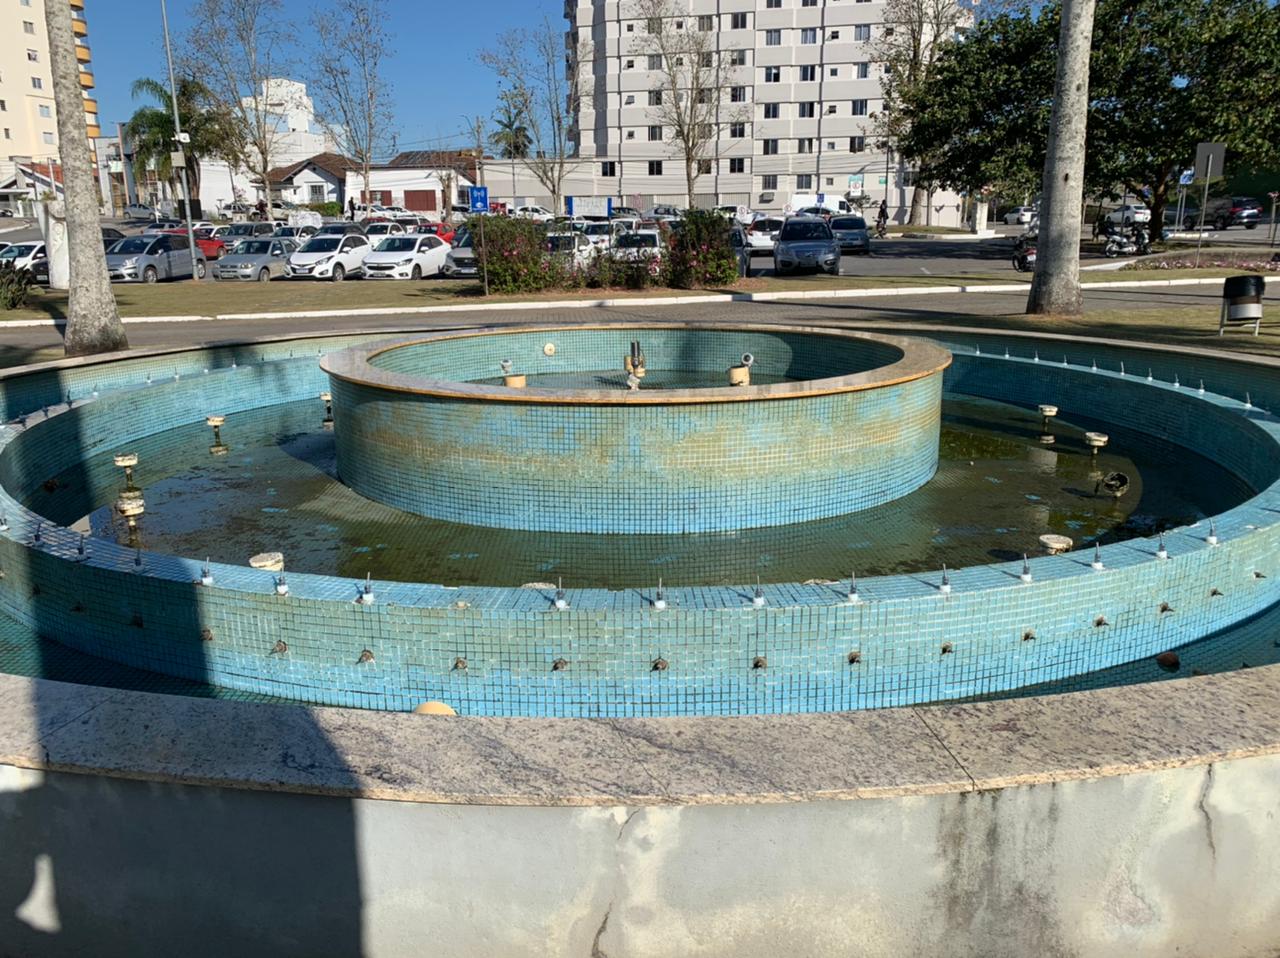 Chafariz da Praça Sesquicentenário é alvo de vandalismo